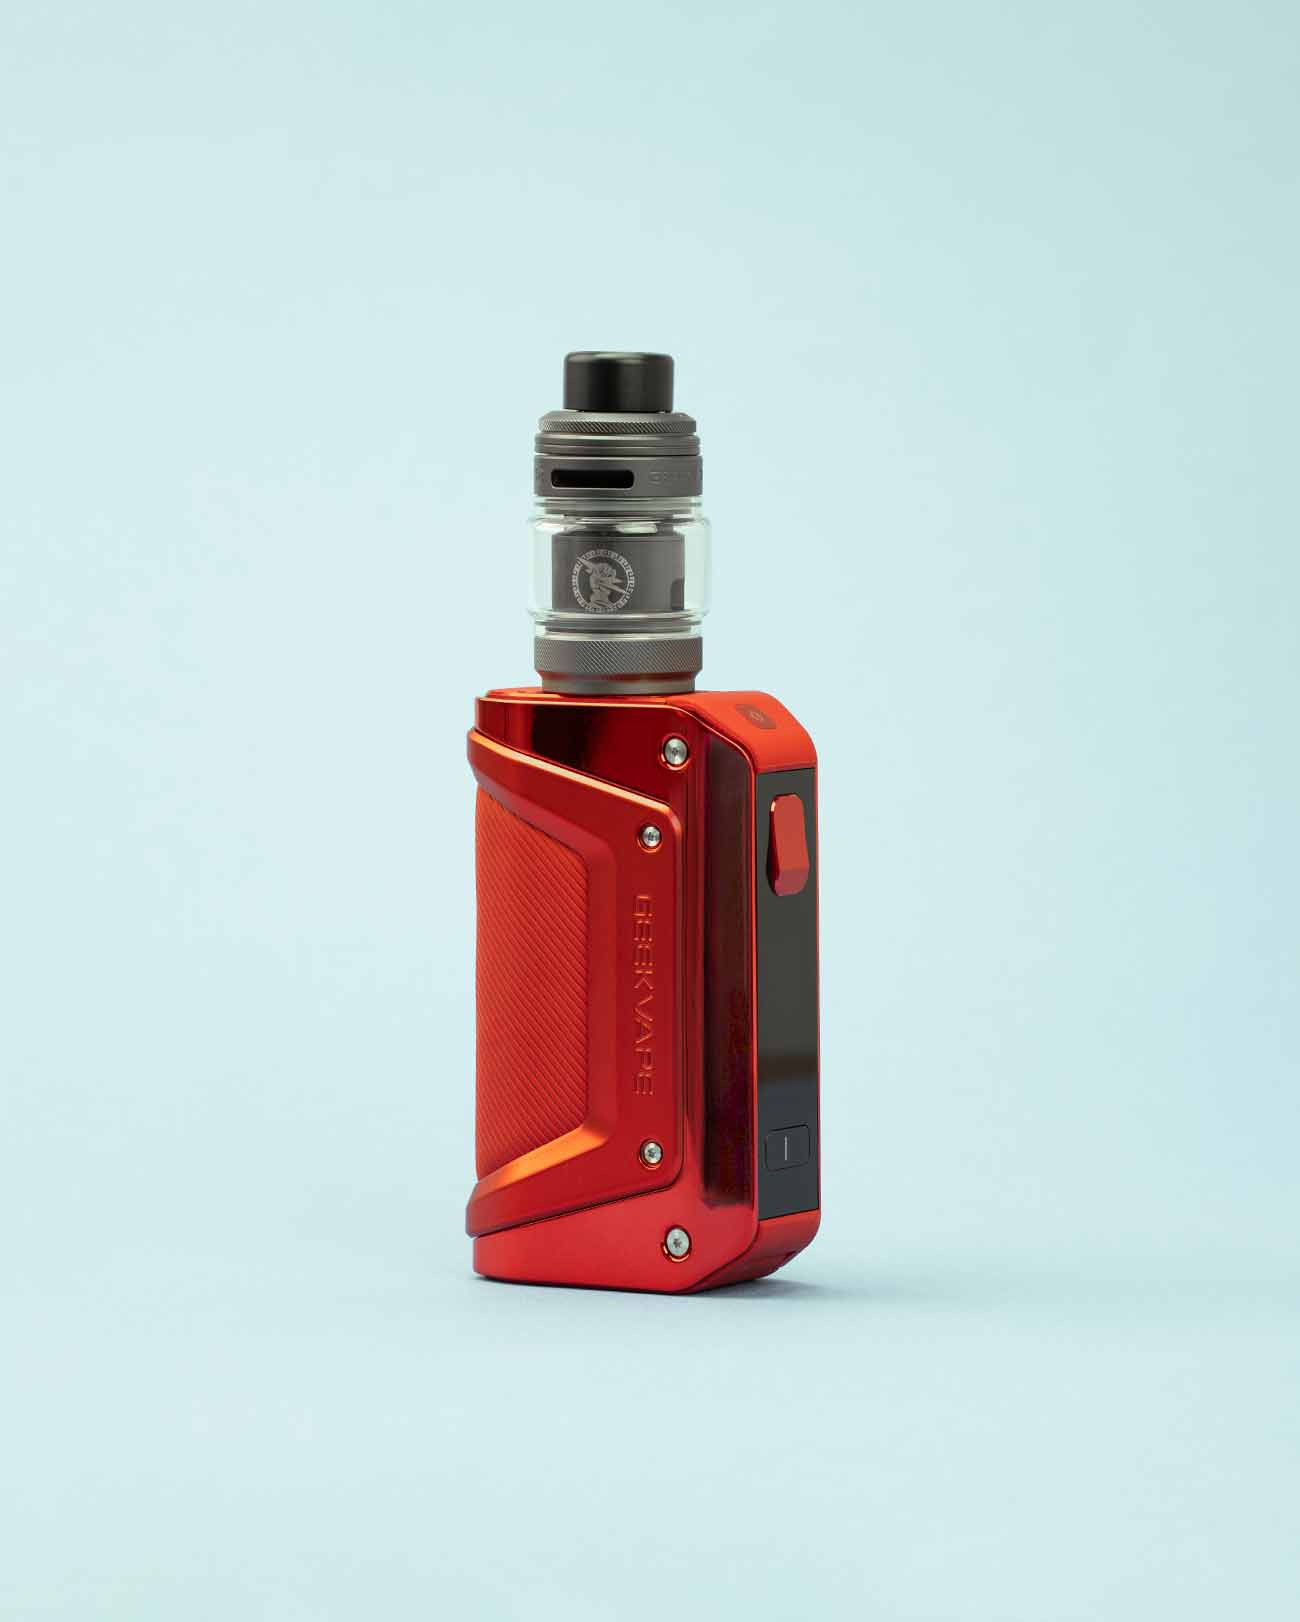 Kit cigarette électronique grosse autonomie Geekvape Aegis Legend 3 couleur Red rouge